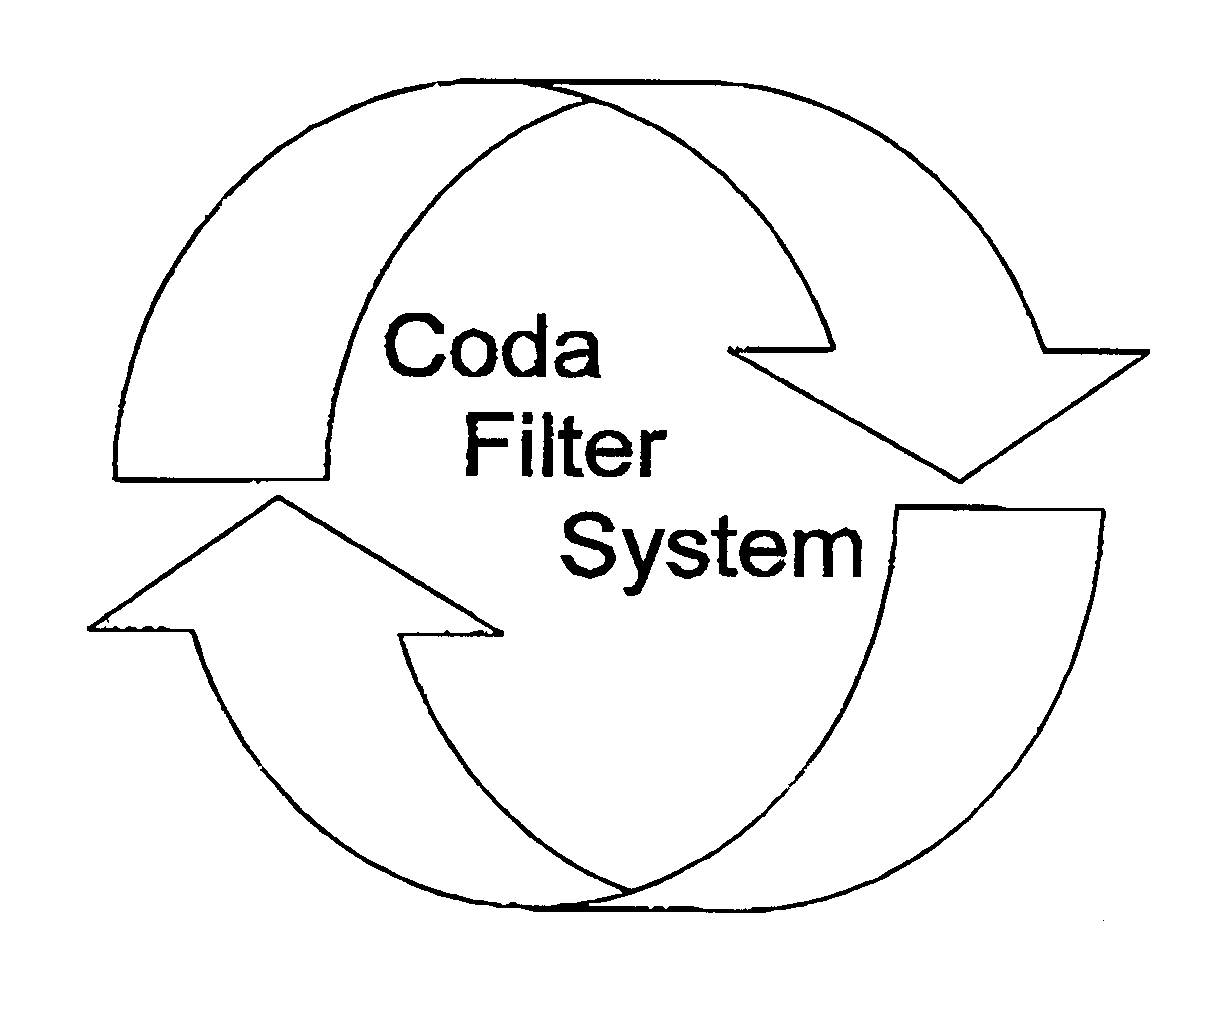  CODA FILTER SYSTEM